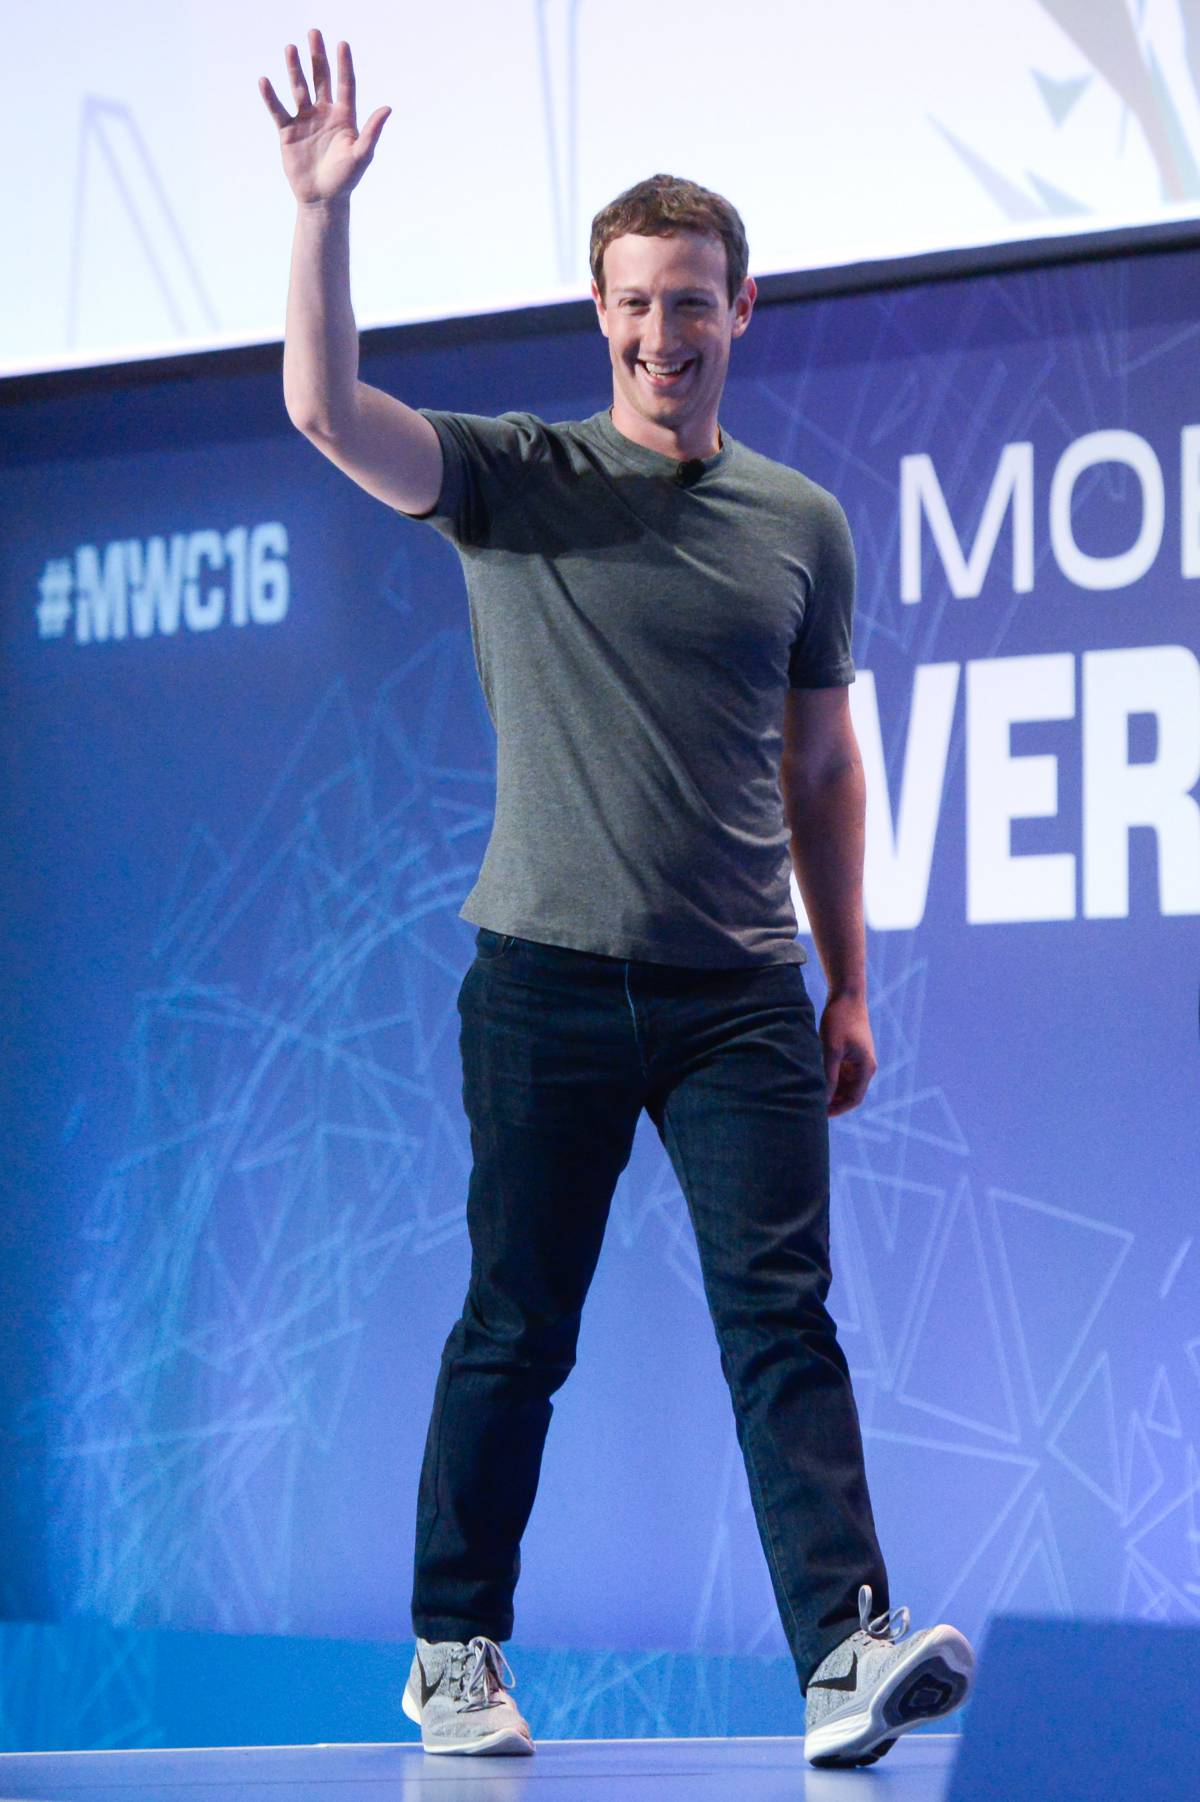 Cancellazione dei dati e nuova funzione Tinder: rivoluzione di Facebook